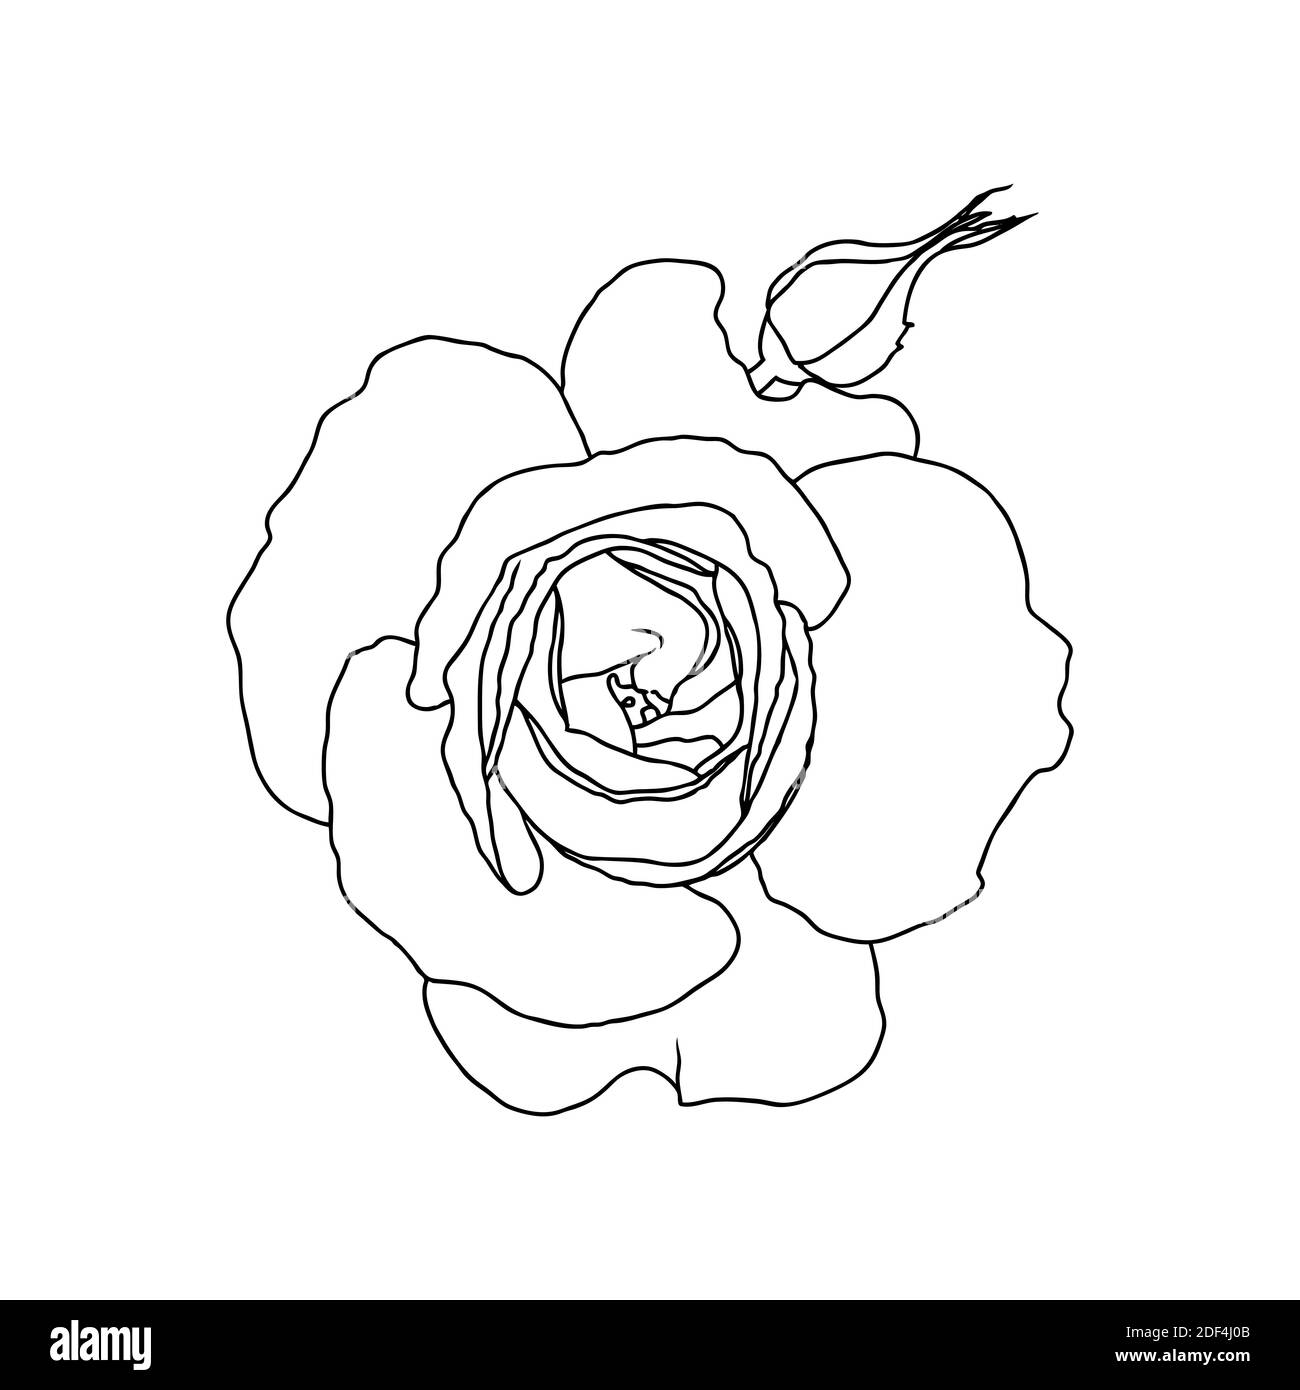 Un dessin de ligne de fleur de rose isolé sur fond blanc. Esquisse dessinée à la main, illustration vectorielle. Élément décoratif pour tatouage, carte de voeux, invitation de mariage, livre de coloriage Illustration de Vecteur